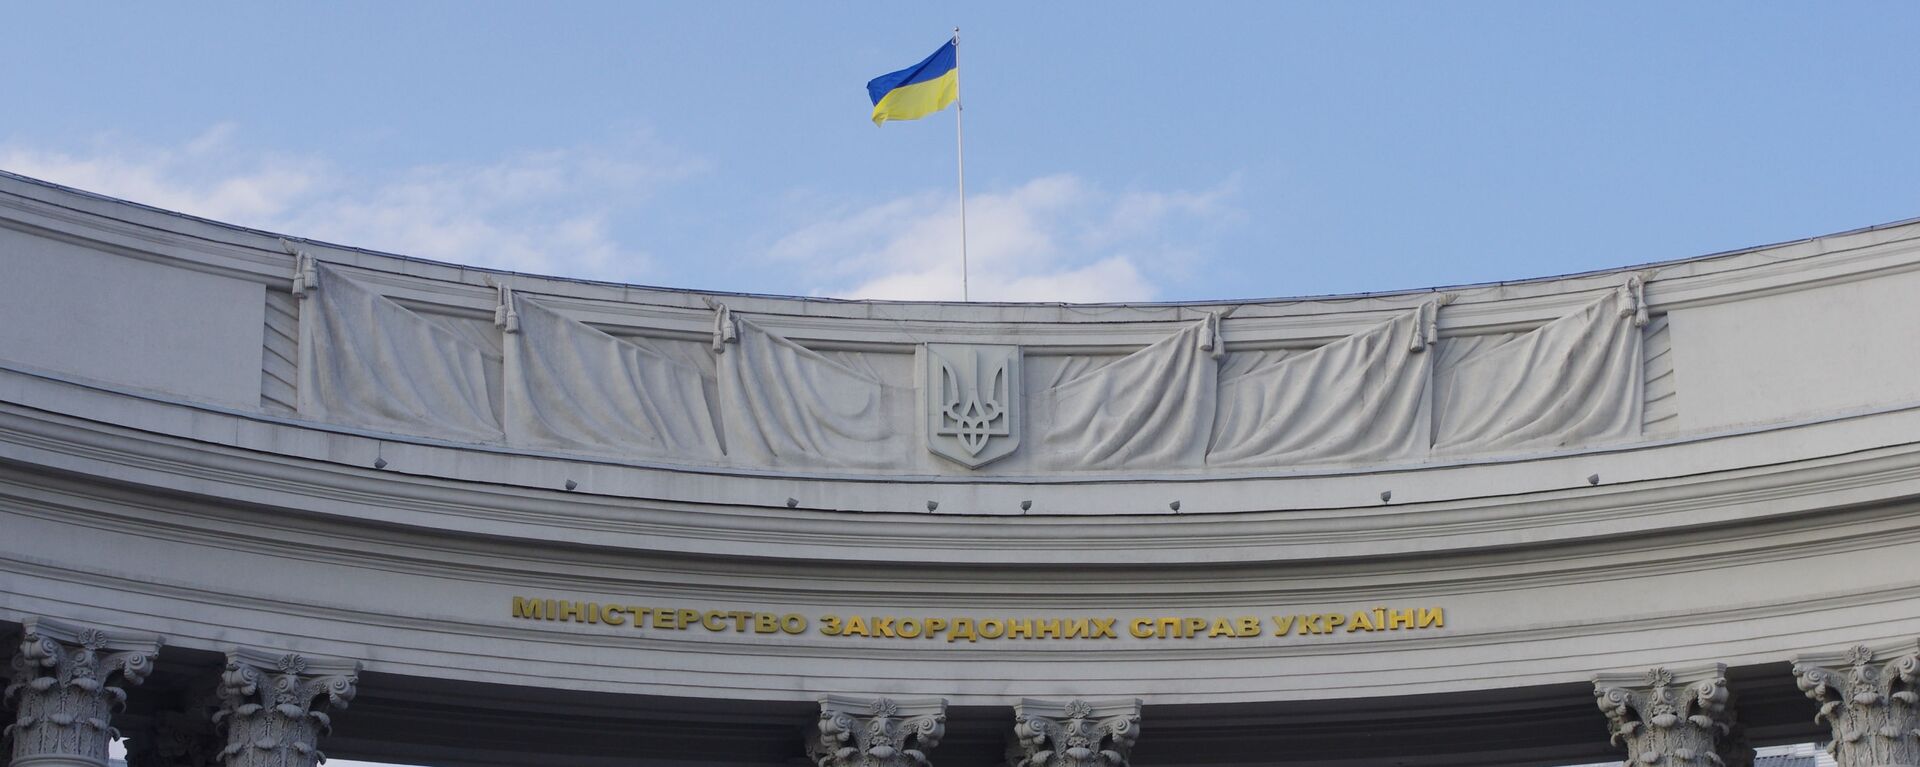 Государственный флаг на здании министерства иностранных дел Украины в Киеве, архивное фото - Sputnik Lietuva, 1920, 15.04.2021